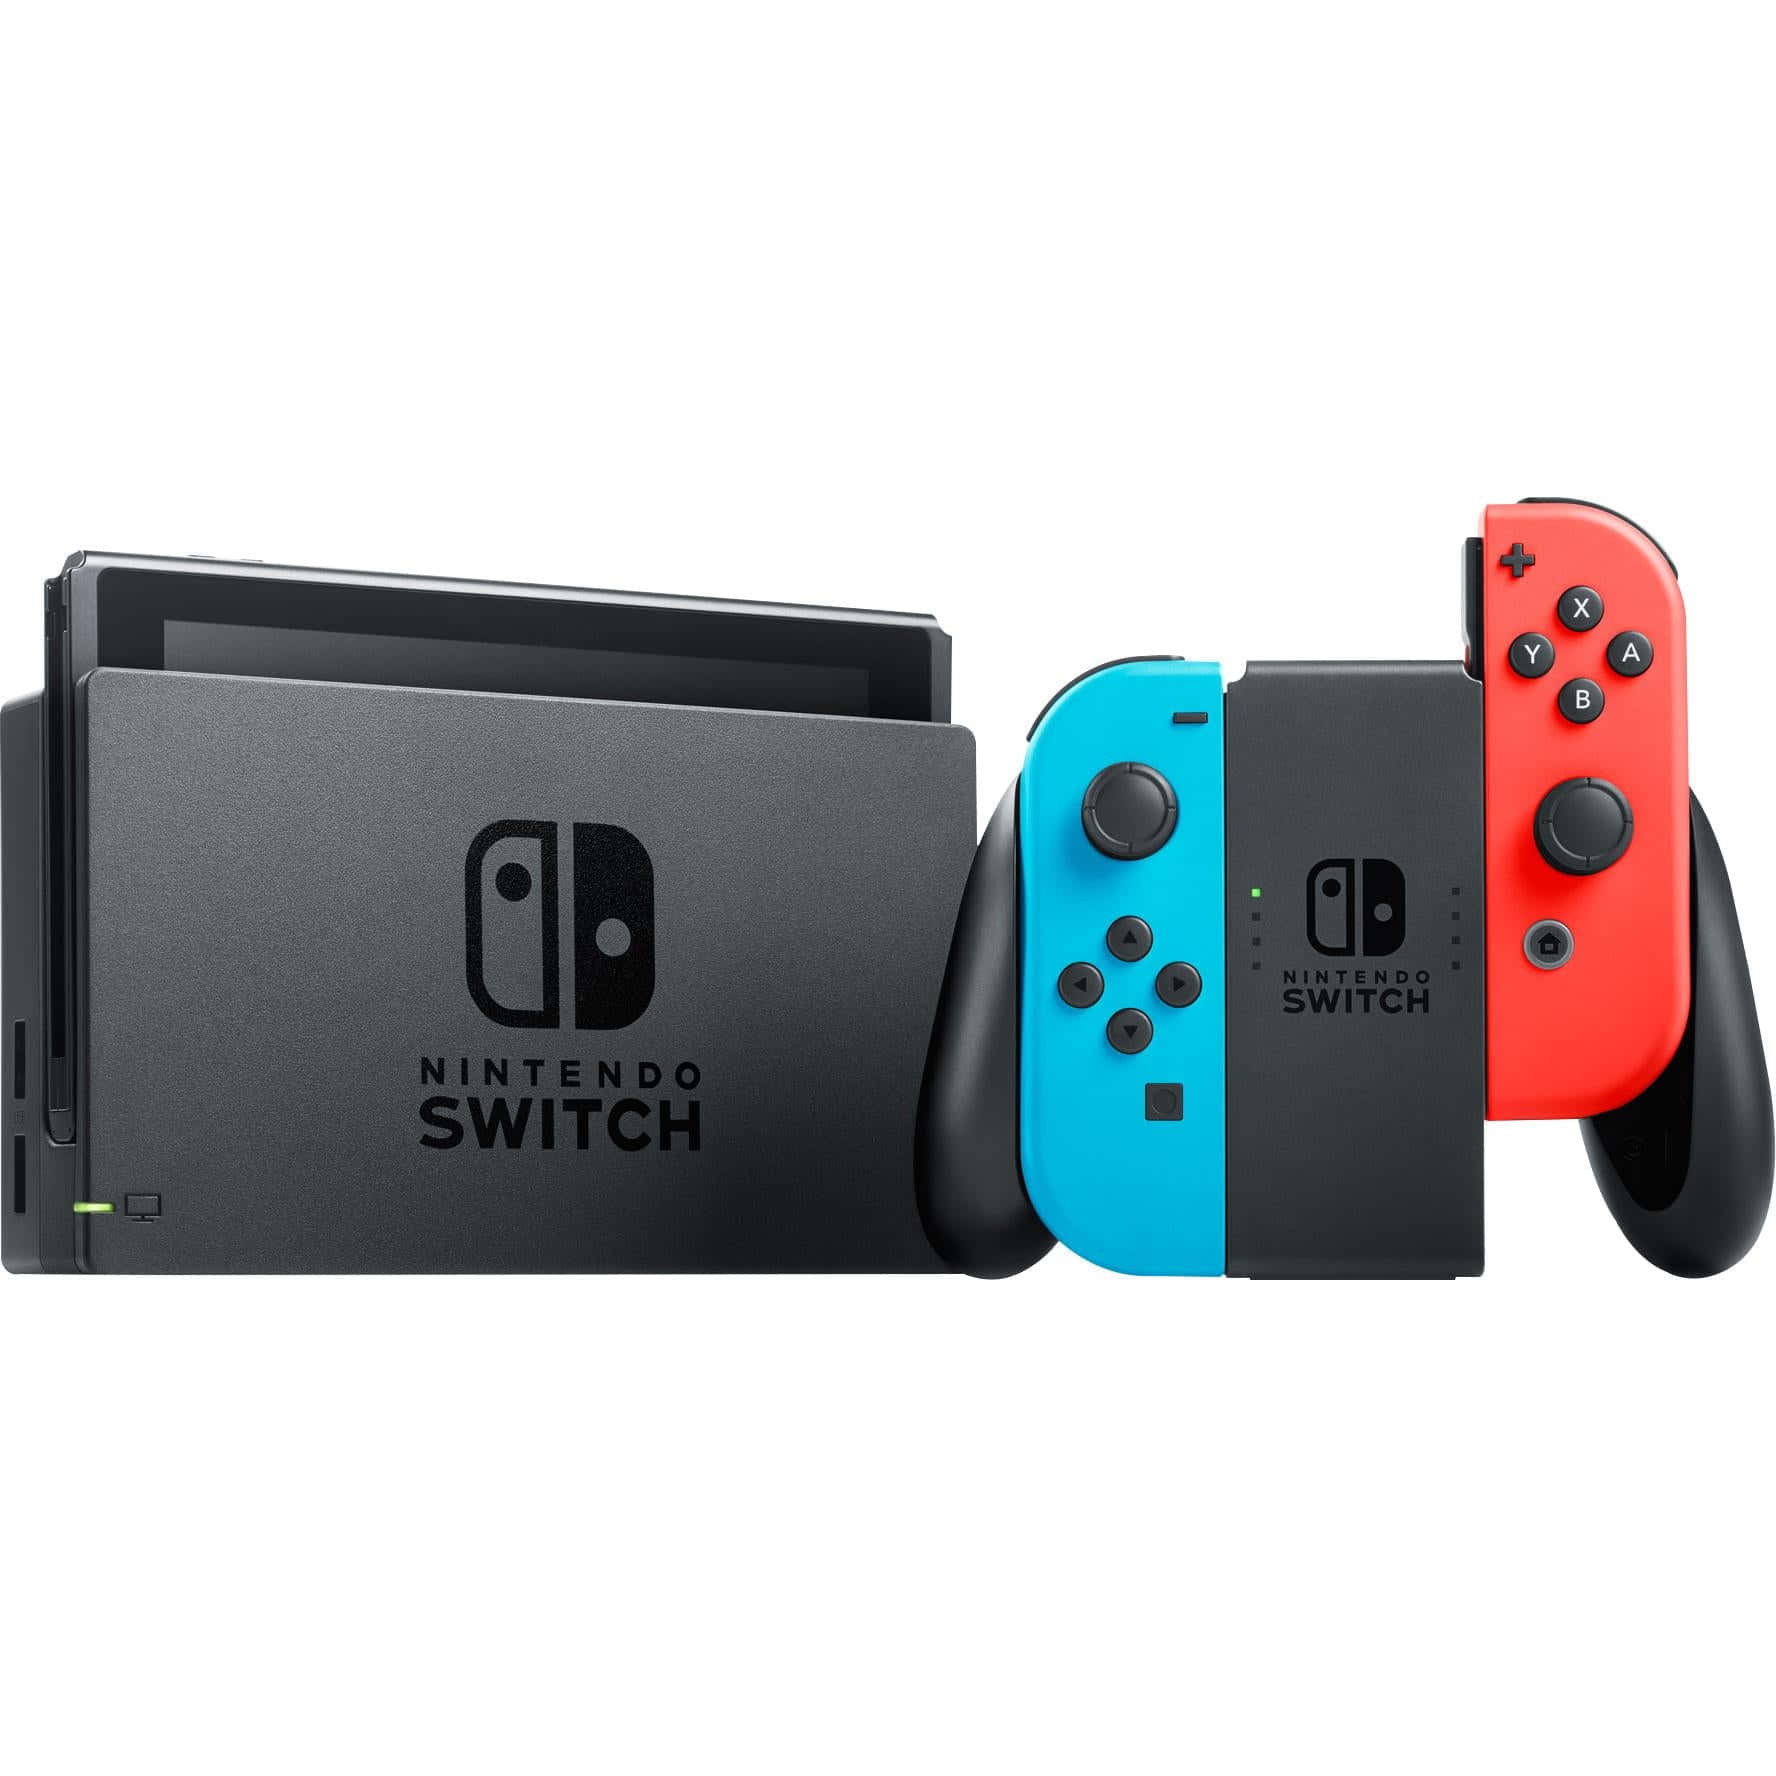 Lomejor De Los Videojuegos De Consola Para El Hogar Y Dispositivos Portátiles: La Nintendo Switch.